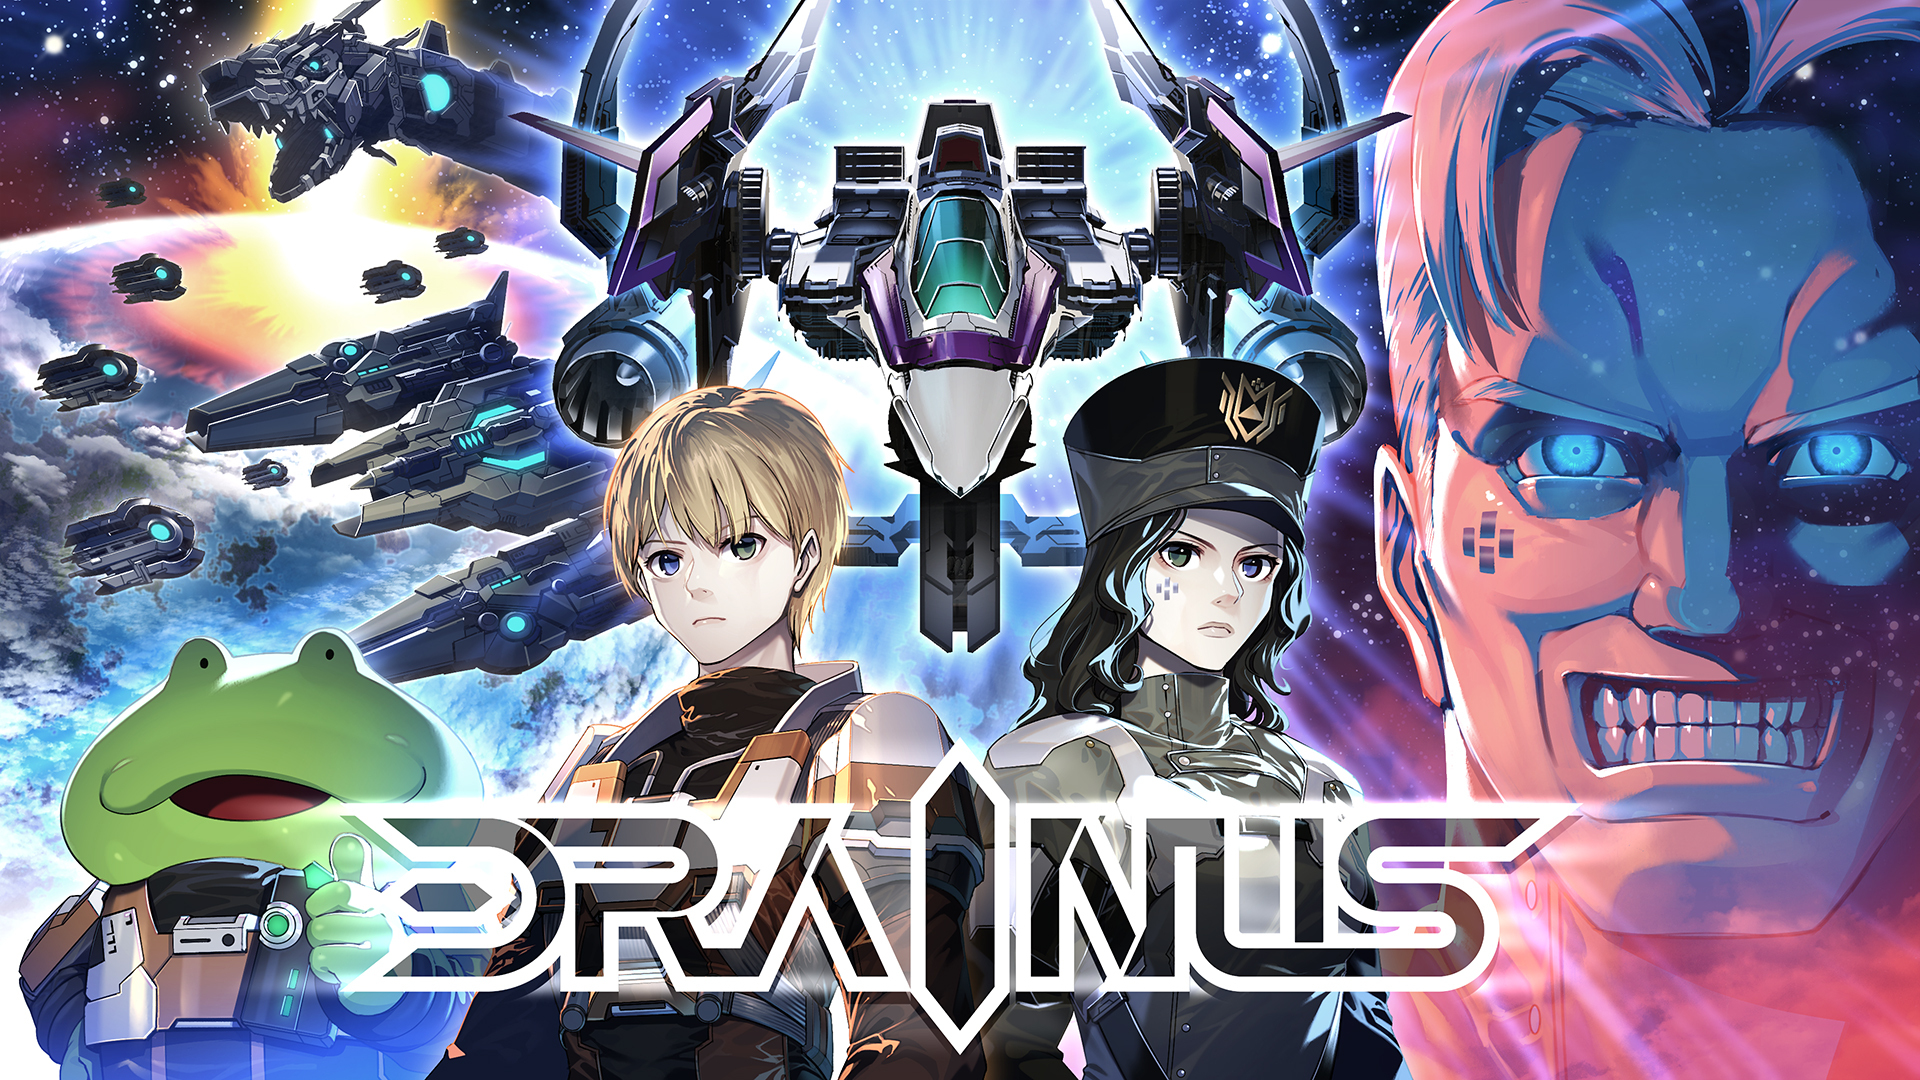 DRAINUS - Metacritic